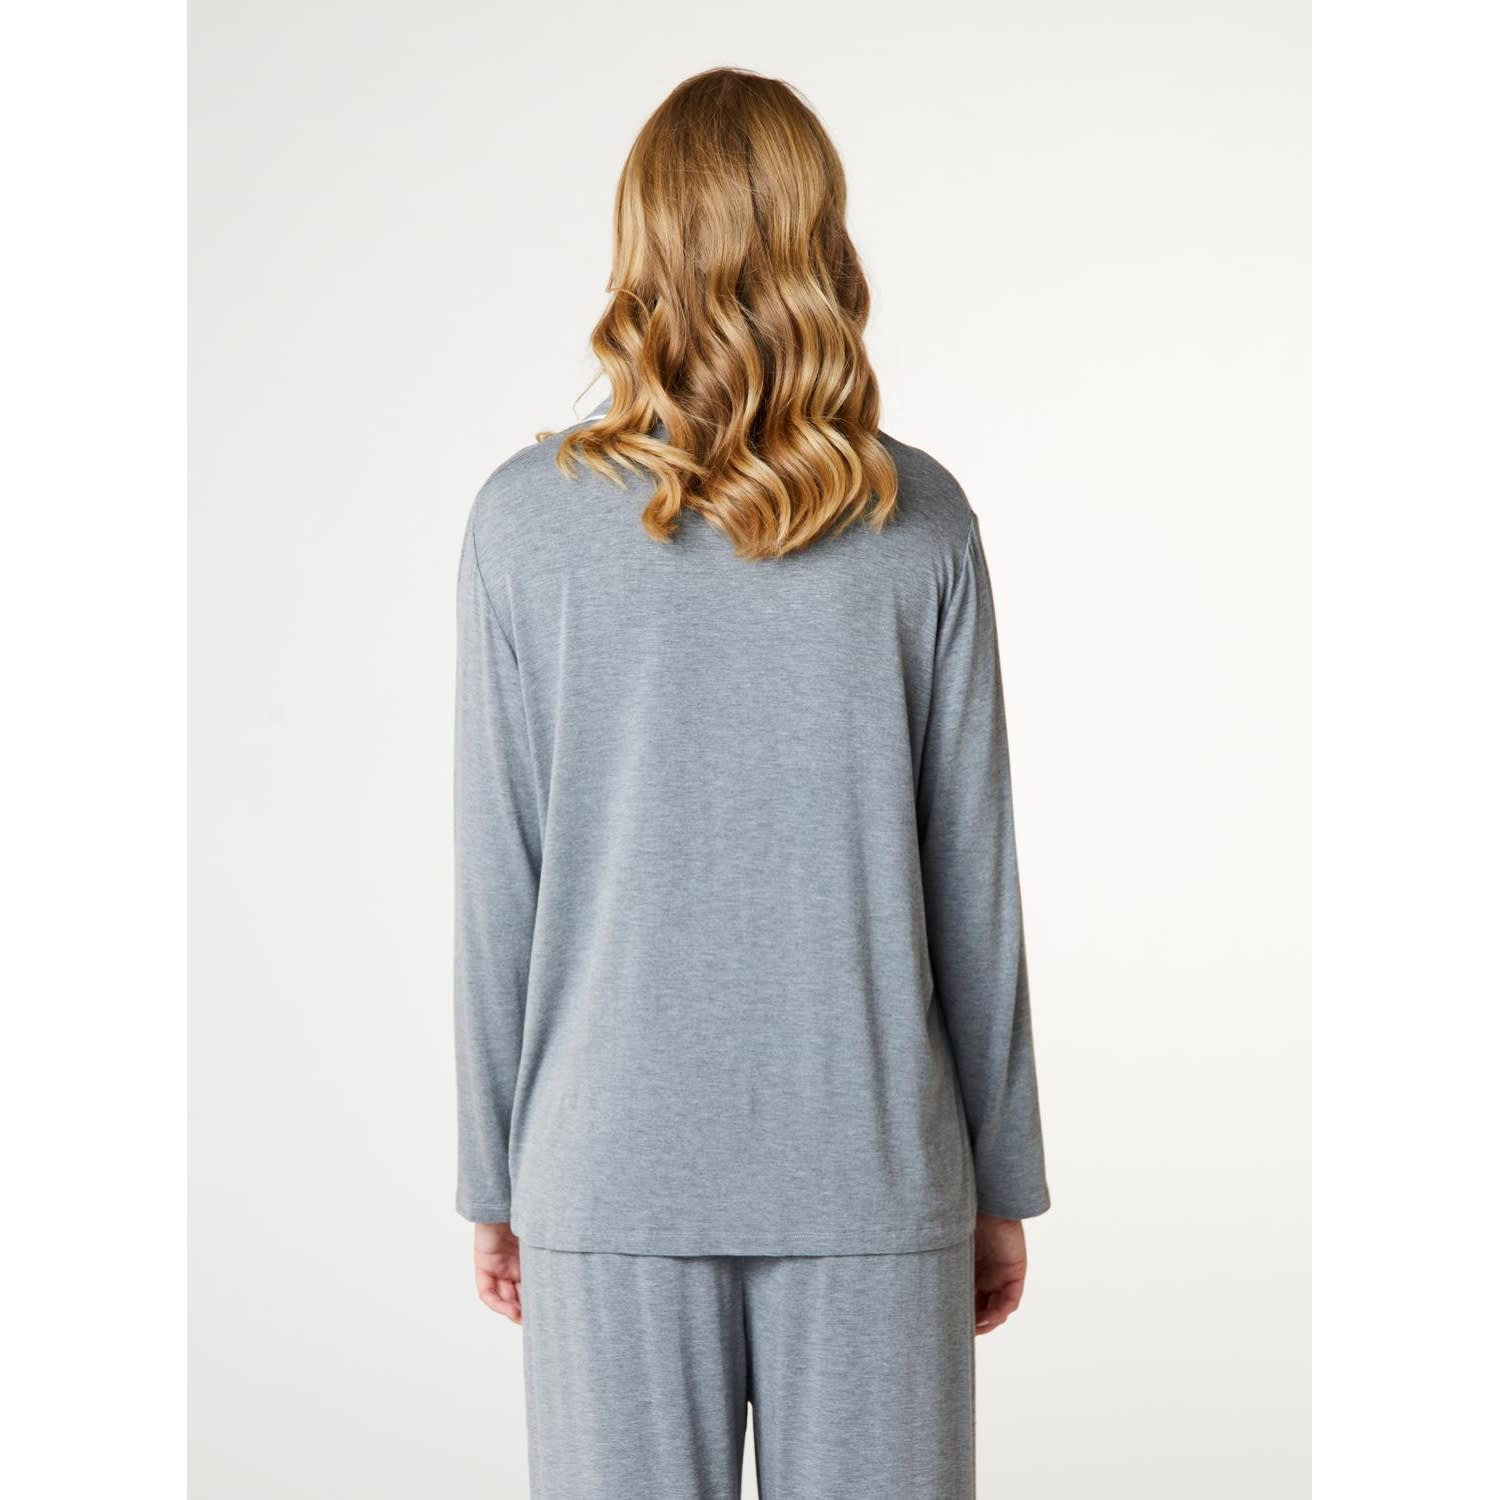 Ccdk Joy Pajamas Shirt Grey Melange, grey melange